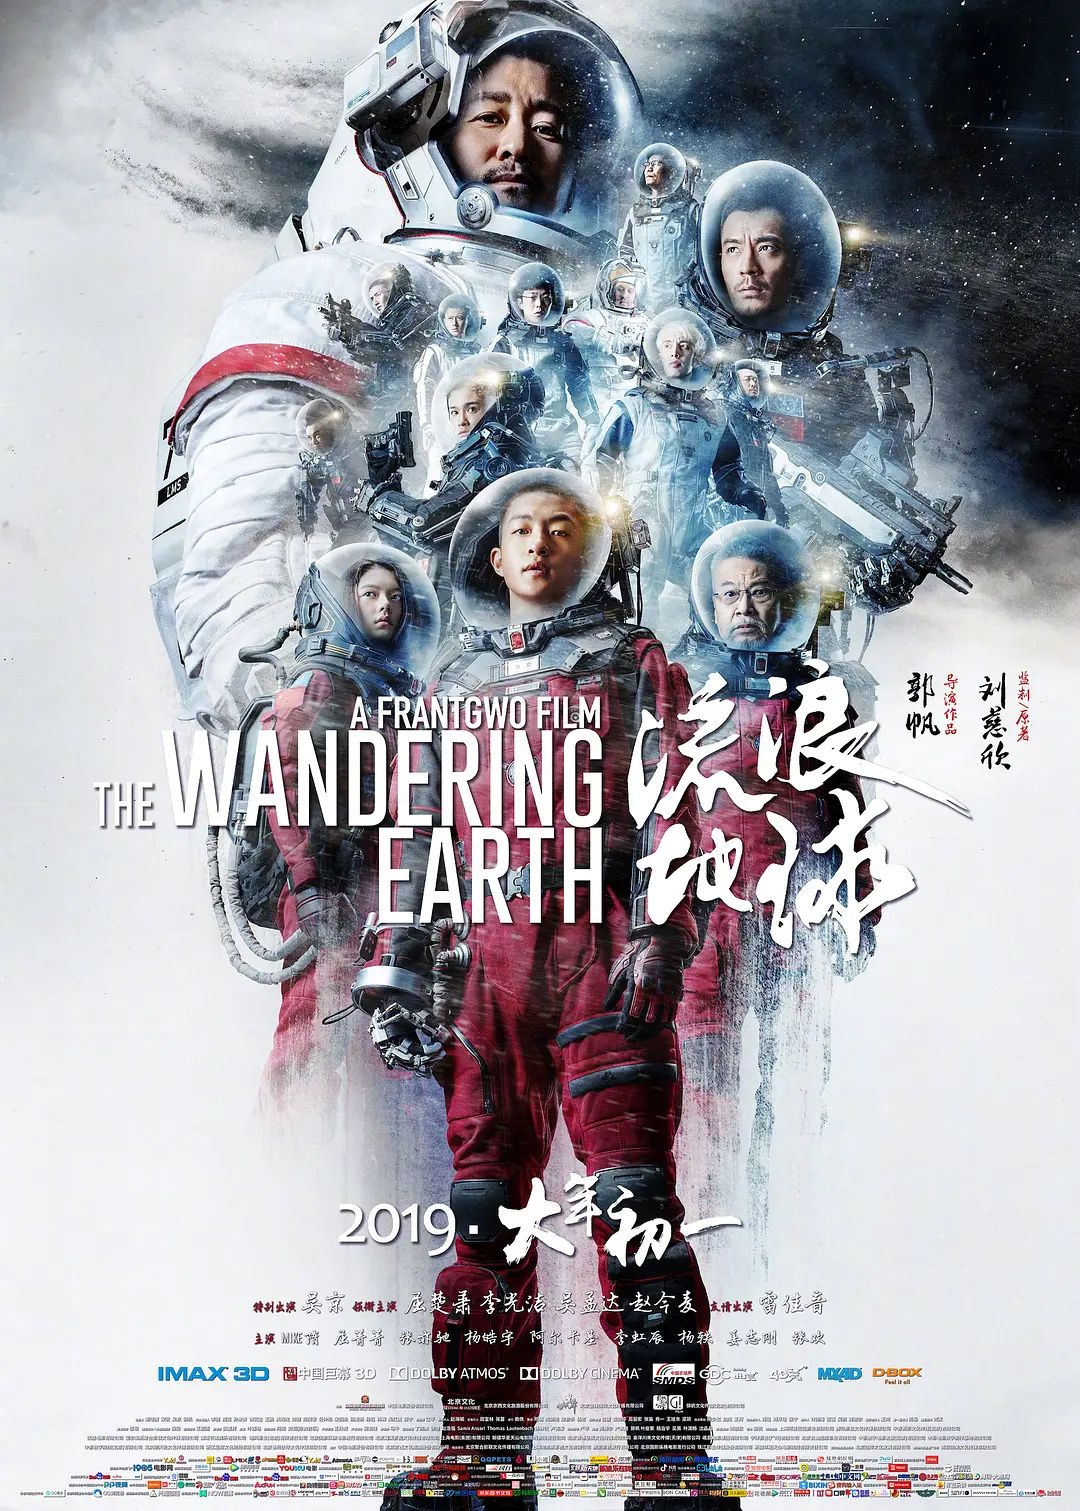 【影视动漫】总长 5 个小时，《流浪地球》系列电影连映将于 3 月 19 日上映-第1张